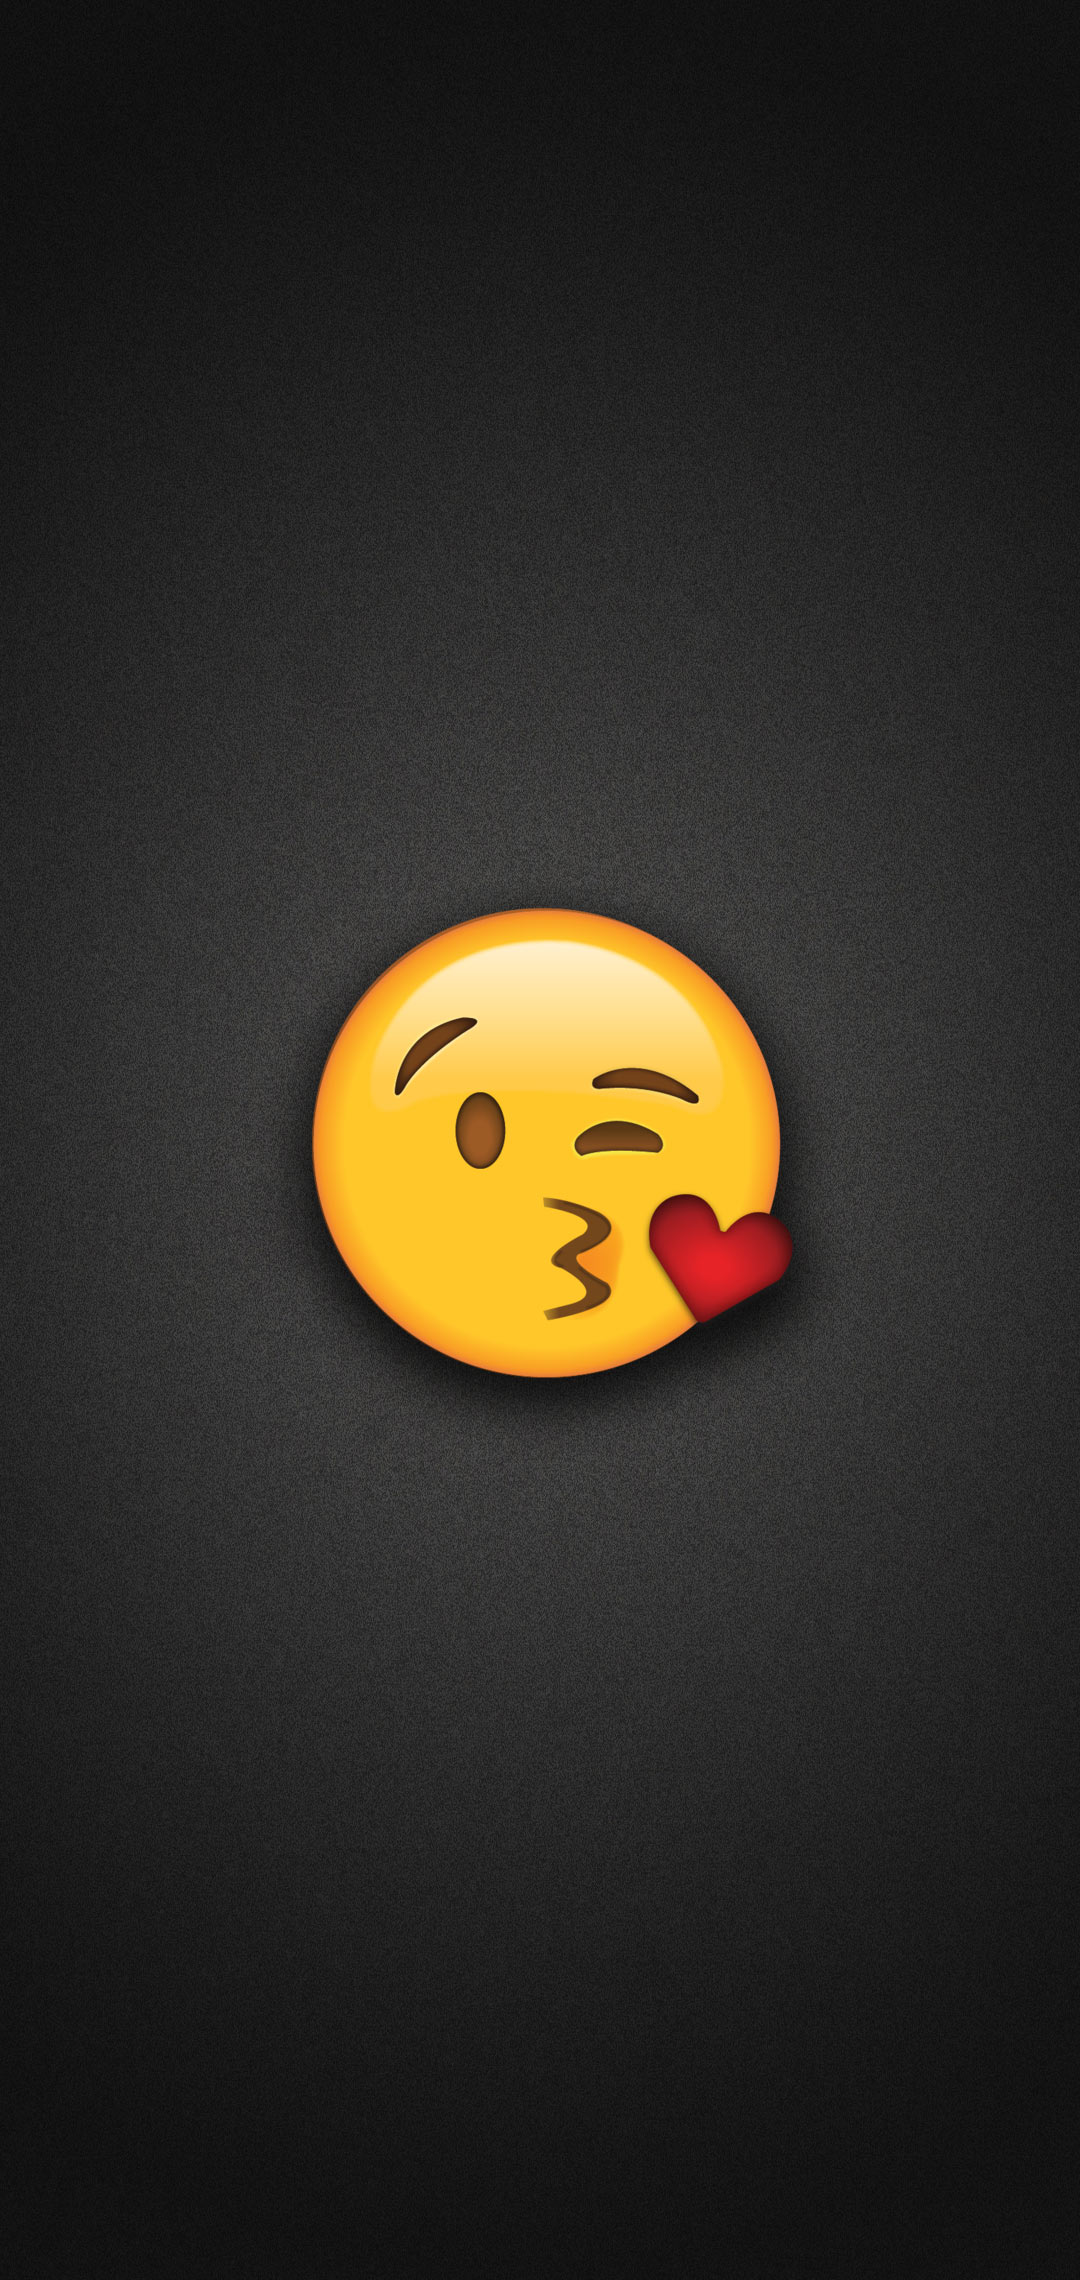 Tựa như tình yêu đang được trao trọn những nụ hôn ngọt ngào, hình nền Emoji hôn đem lại cho bạn cảm giác tựa như đang được khuấy động cảm xúc trong lòng. Với những biểu tượng năng động và đáng yêu, hình nền Emoji hôn sẽ làm cho màn hình của bạn trở nên sinh động và thú vị hơn bao giờ hết.